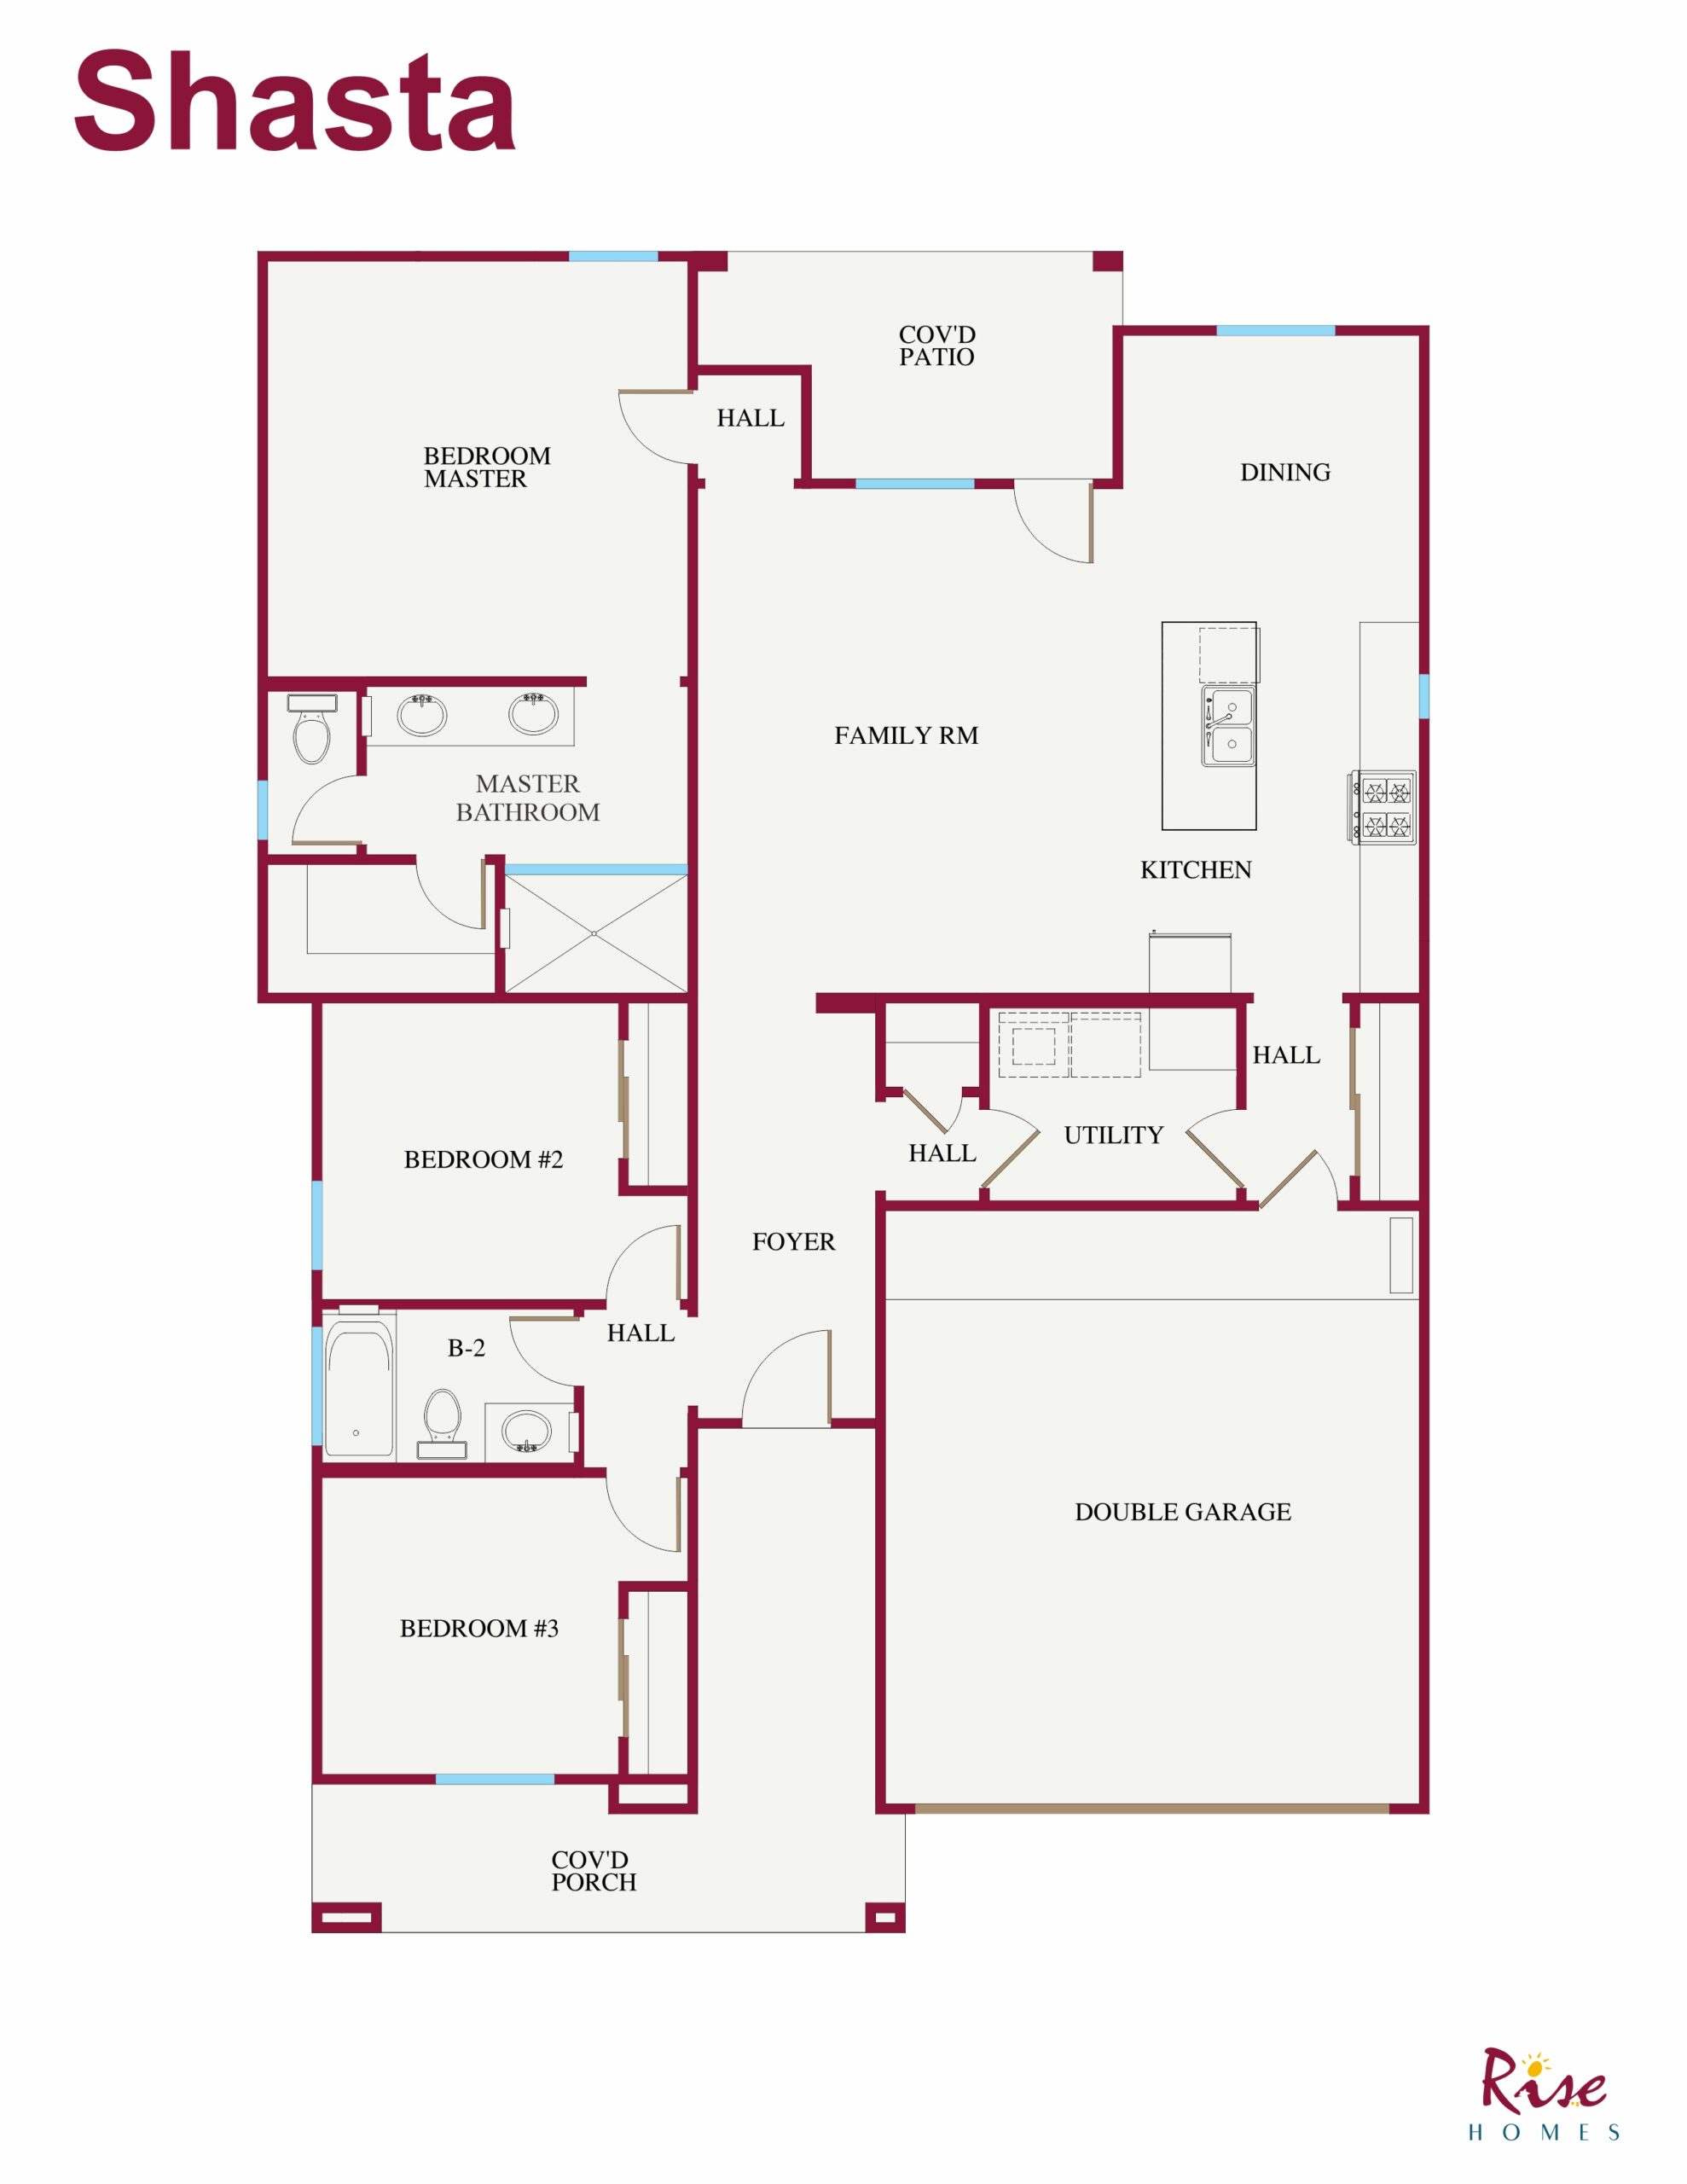 Shasta Floorplan Rise Homes 1,440 sqft Rise Homes